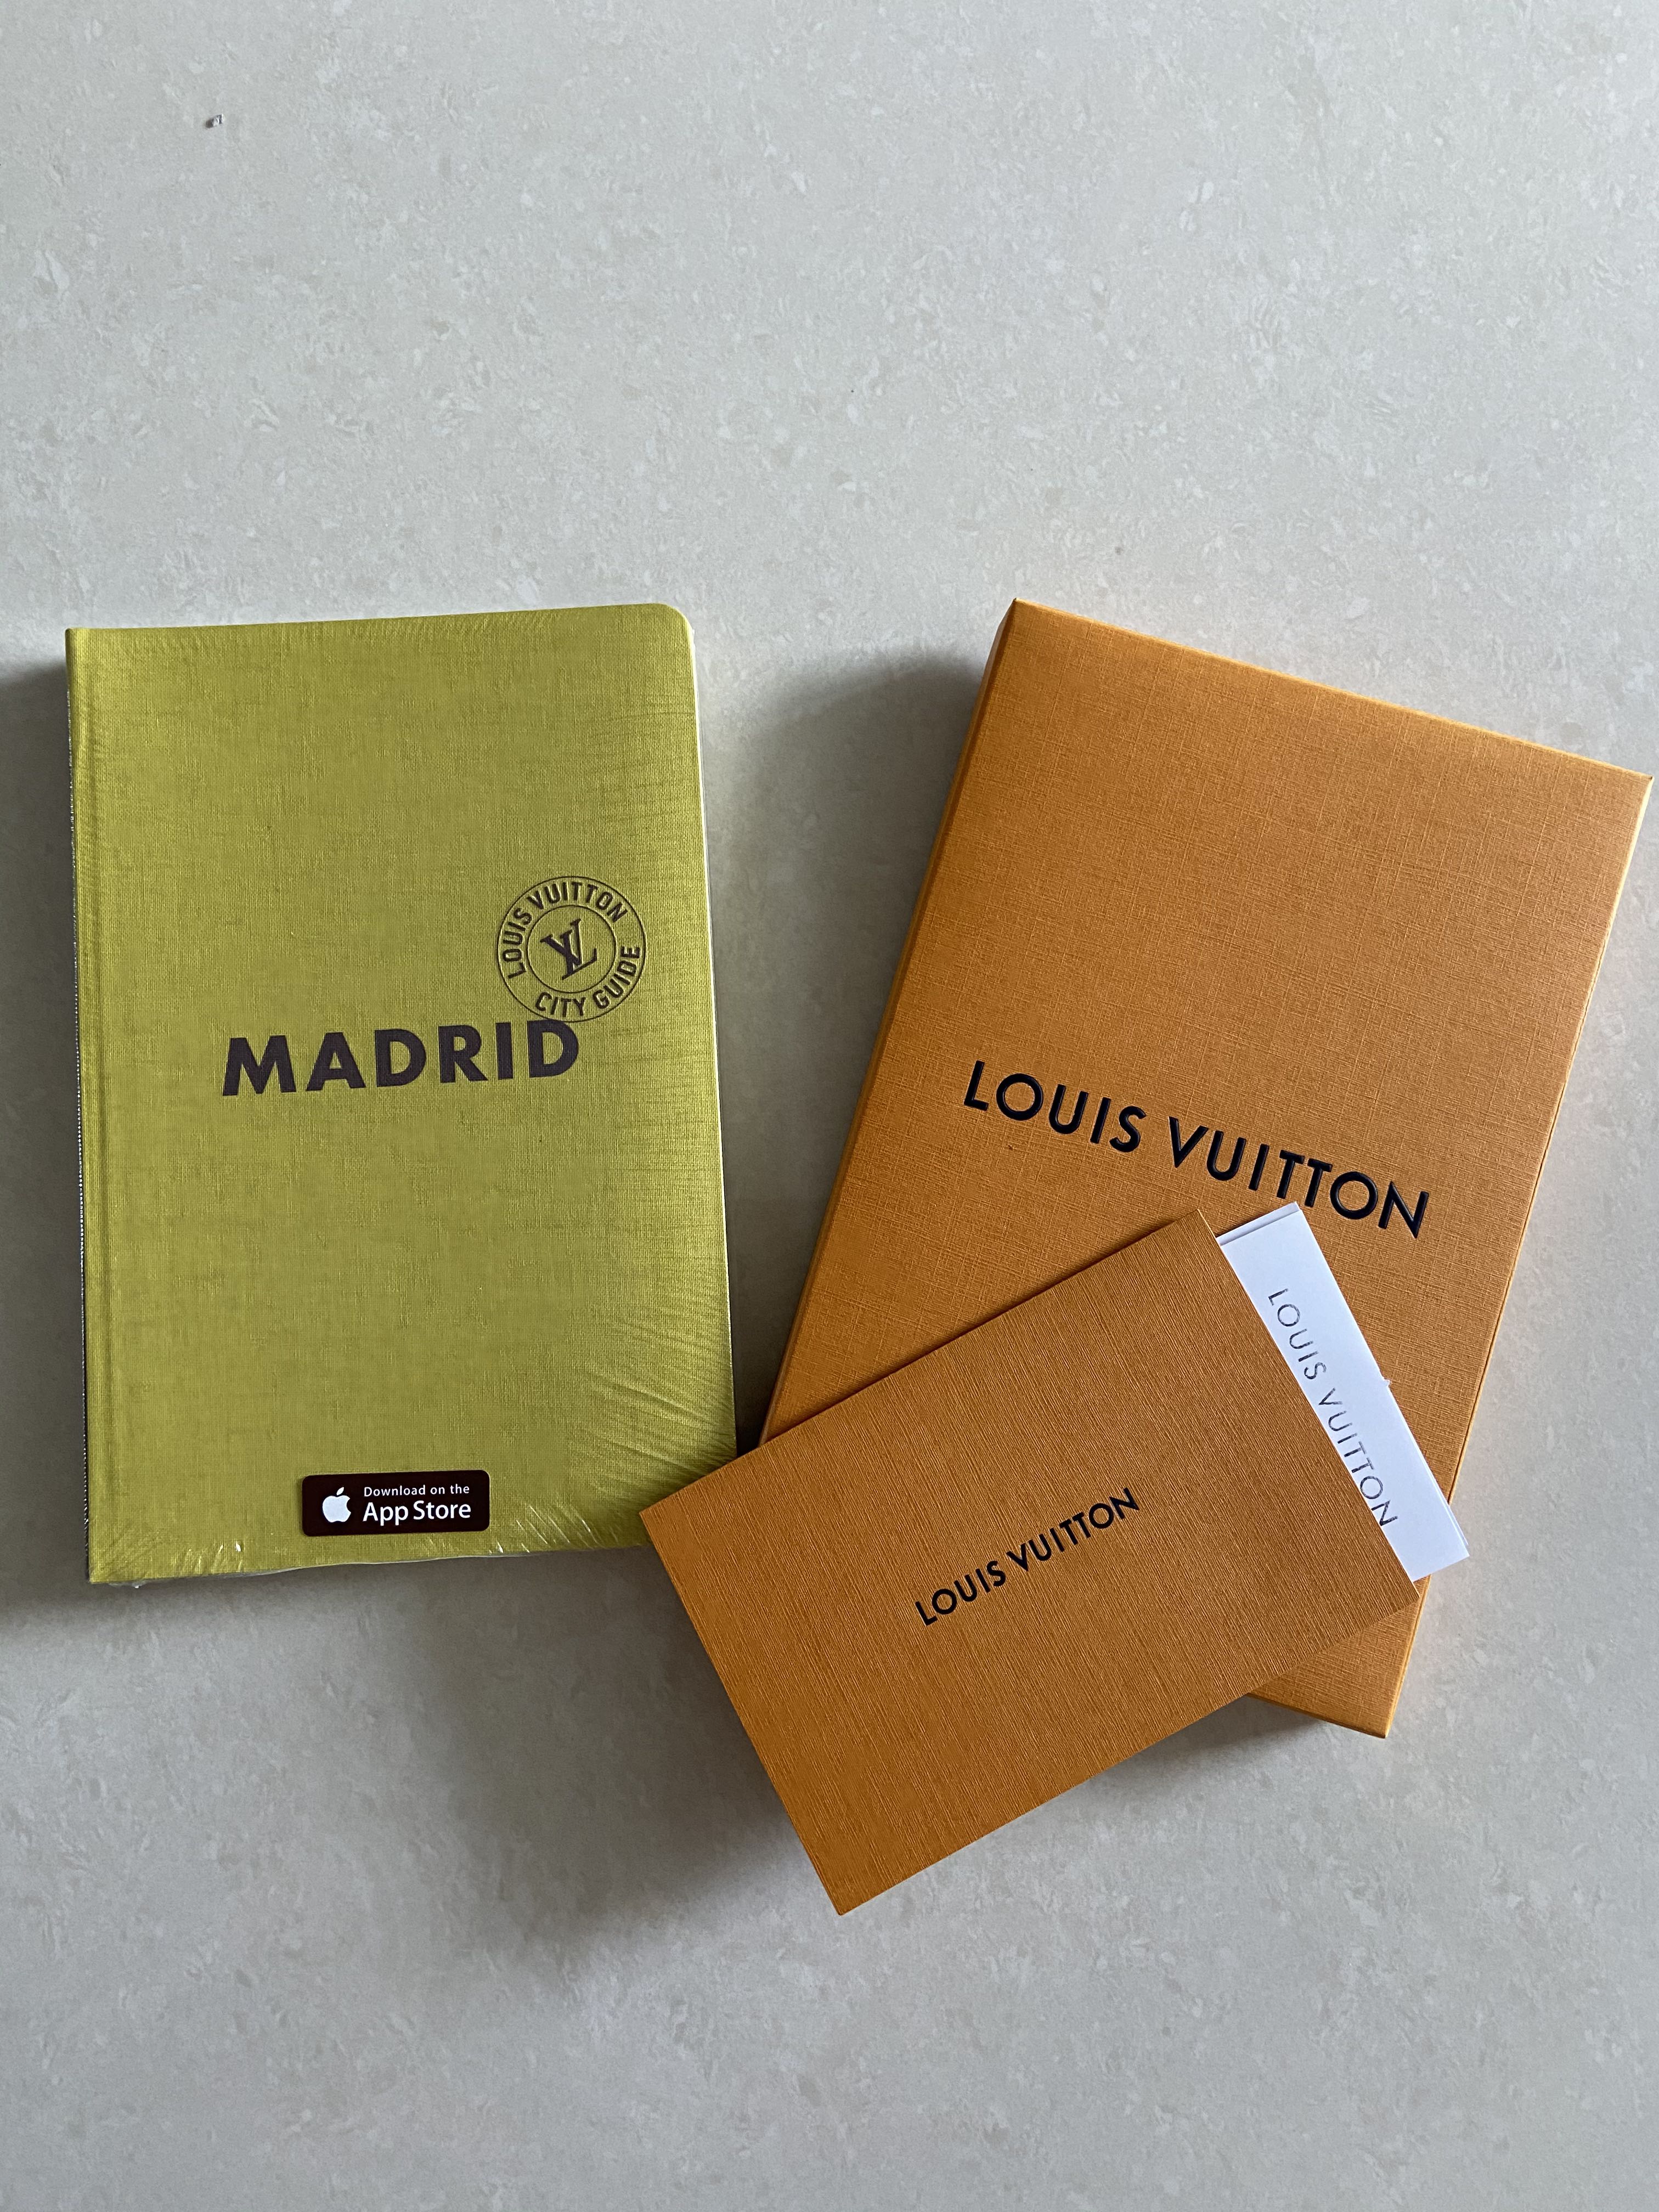 Louis Vuitton City Guide Madrid - T.ba blog